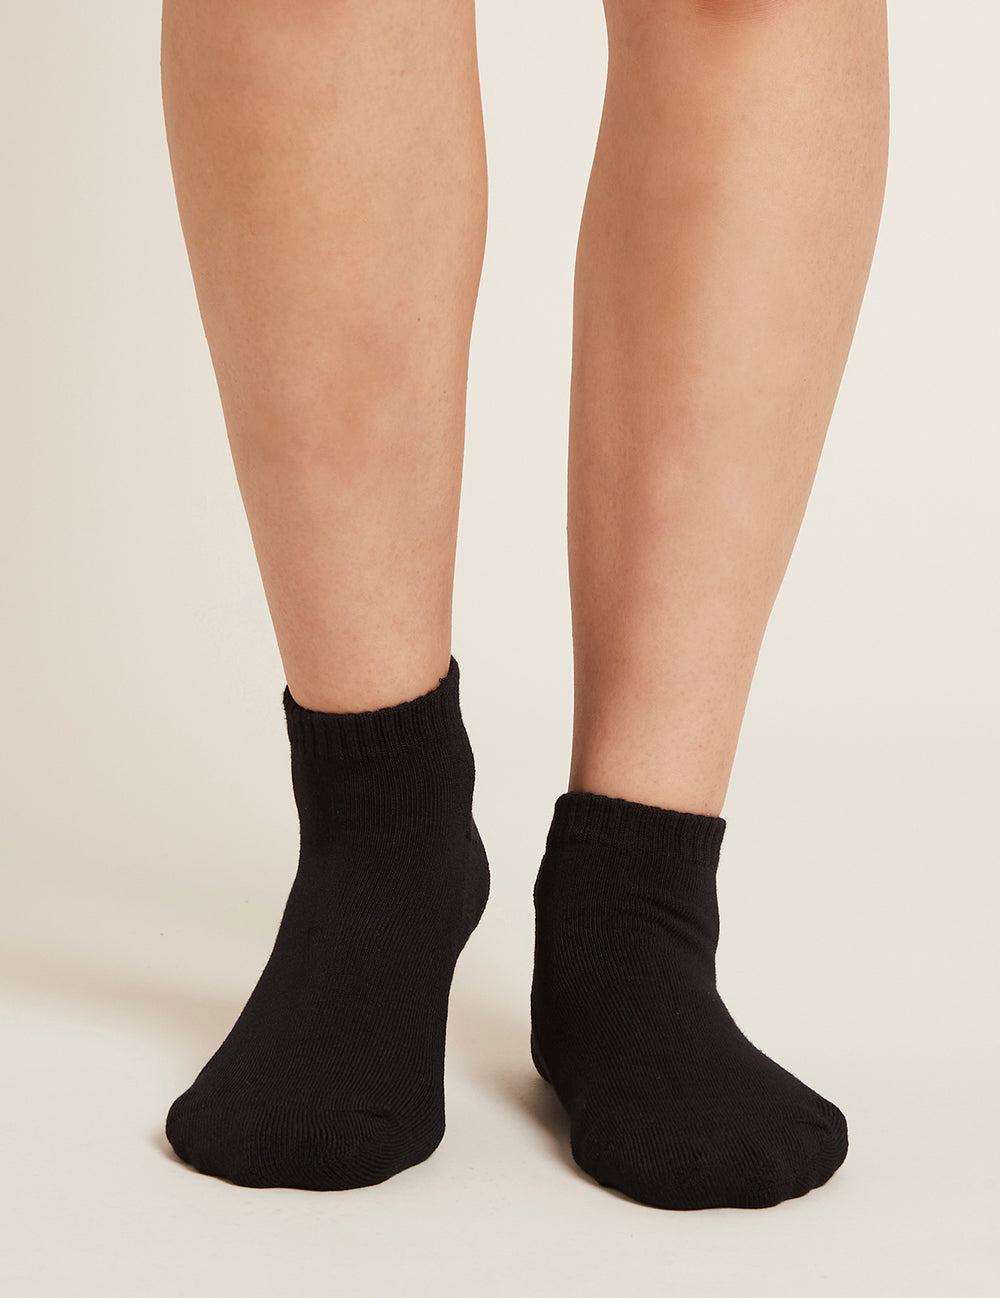  Falari 12 Pairs Women Ankle Socks Colorful ComfortSoft